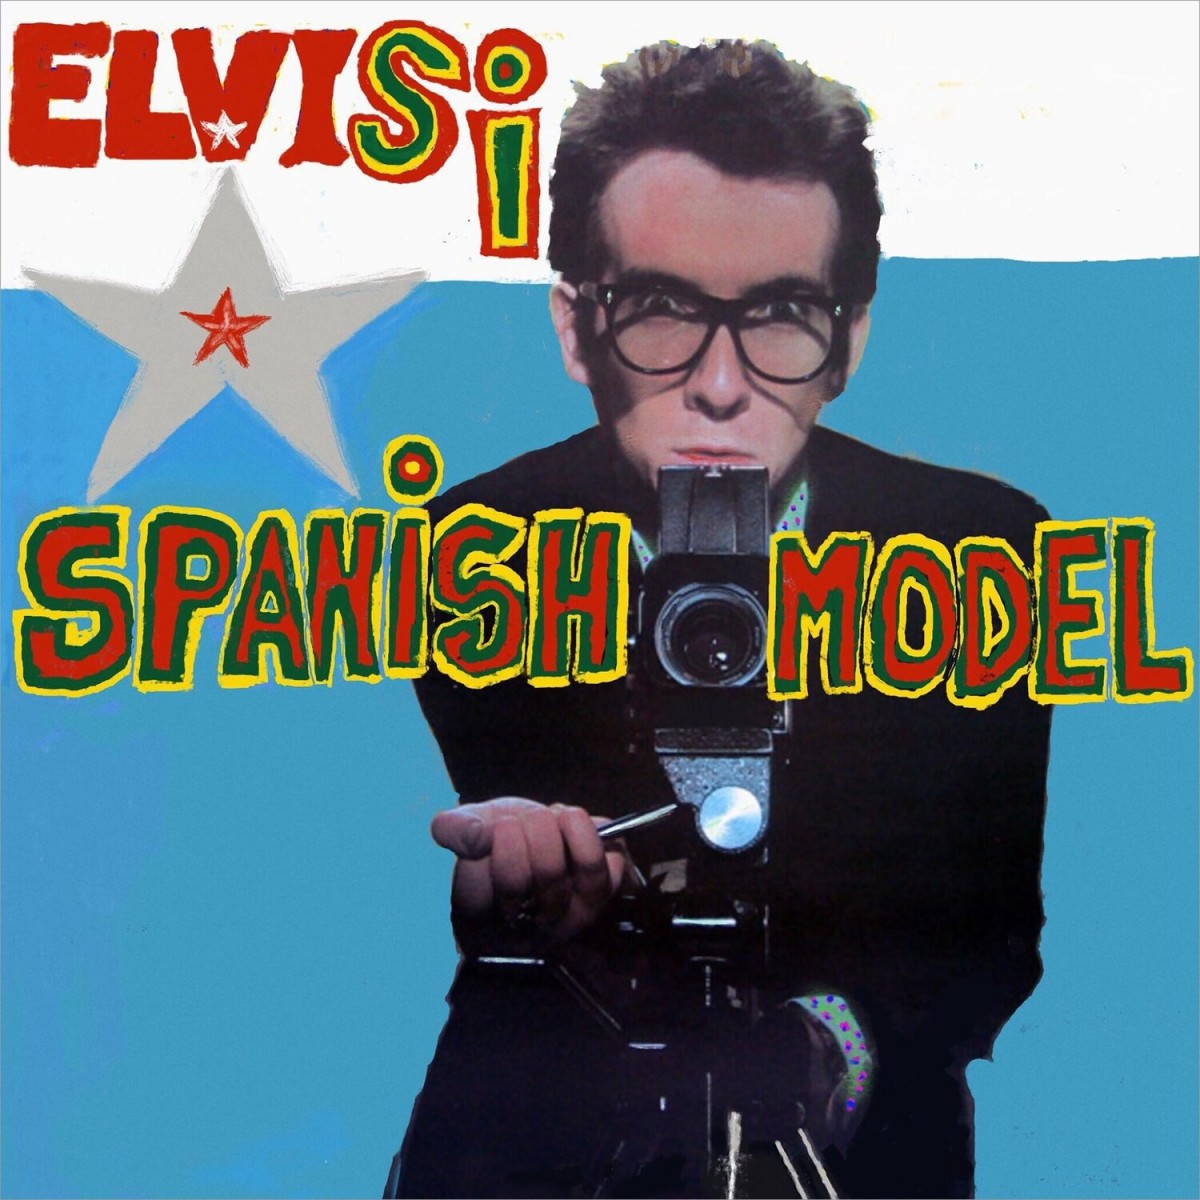 Elvis Costello's new album cover revamps the original 1978 design.